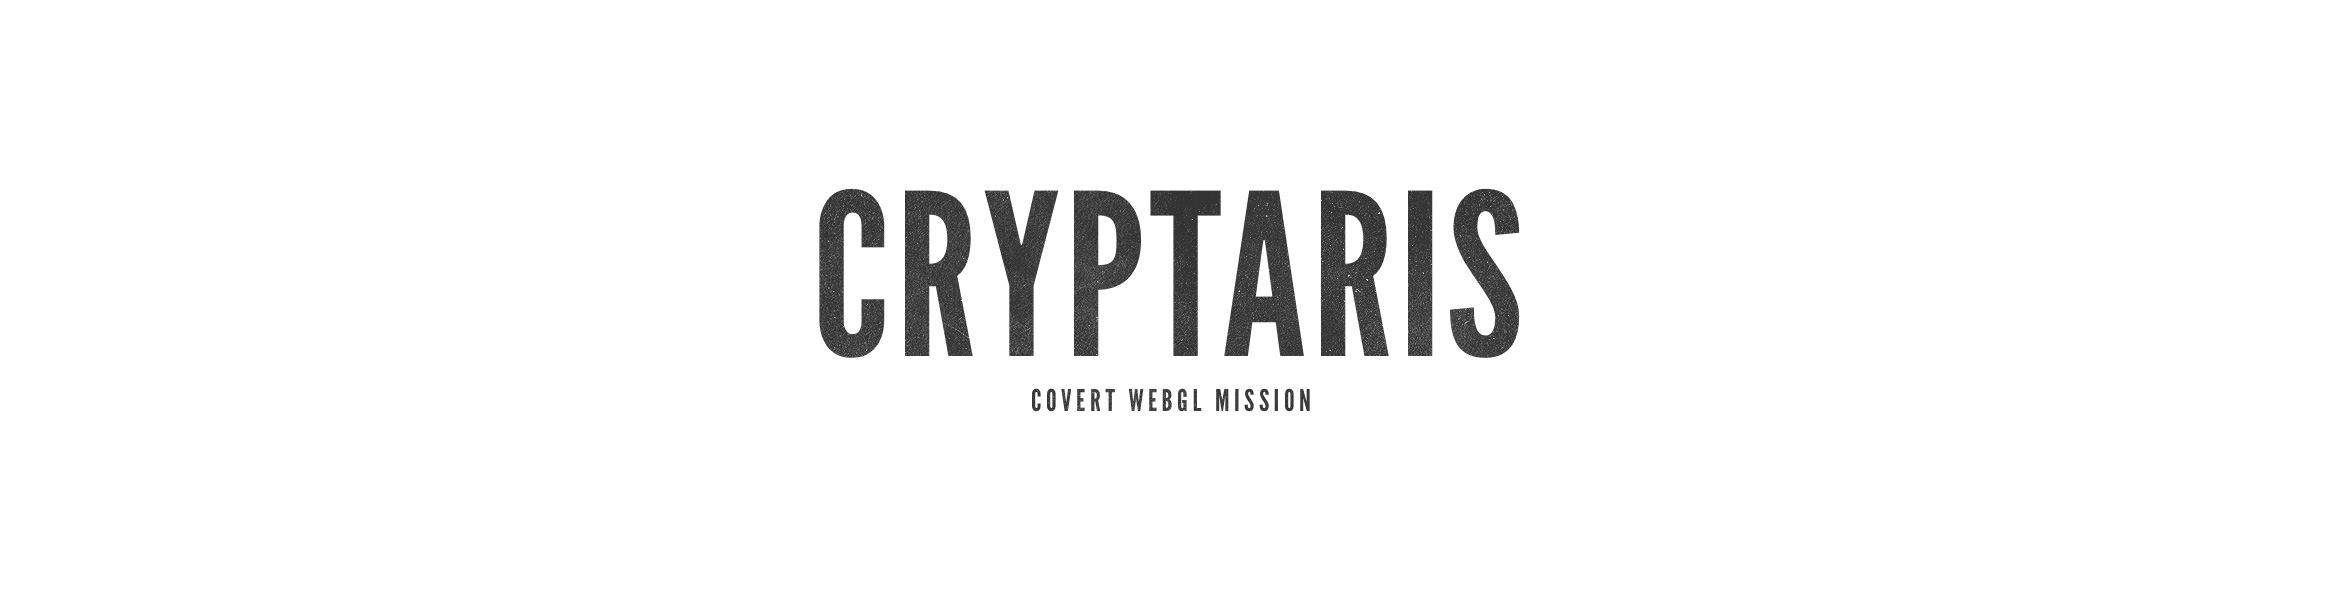 Cryptaris-BT